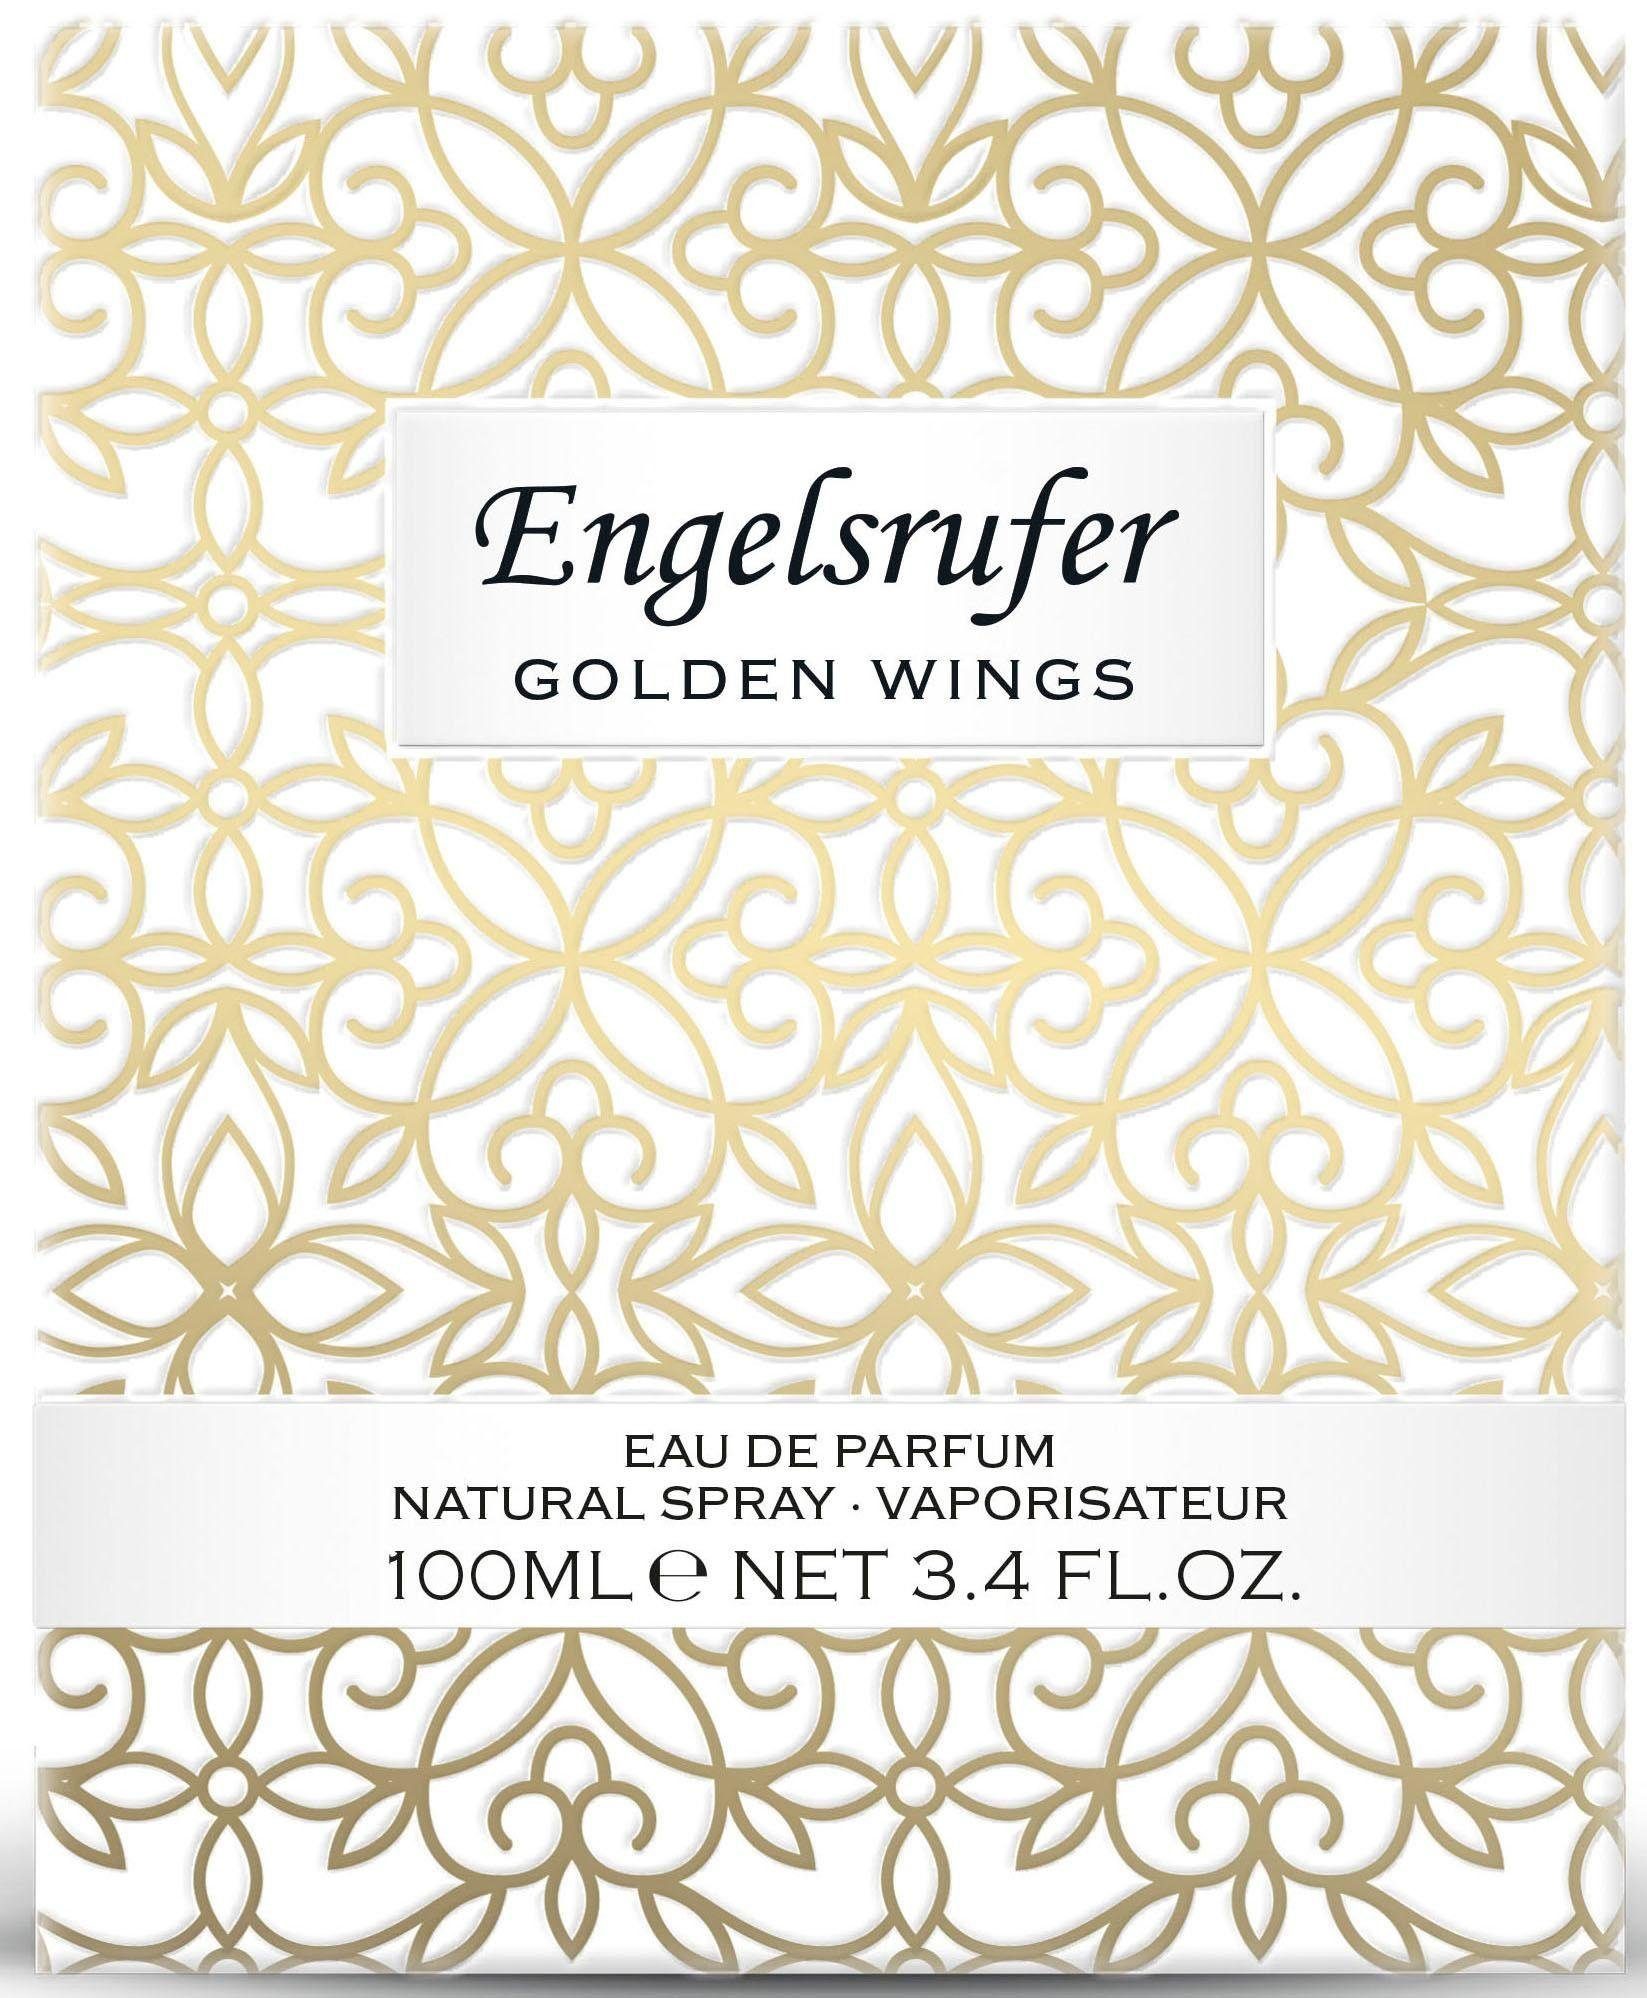 Parfum de Engelsrufer Golden Eau Wings